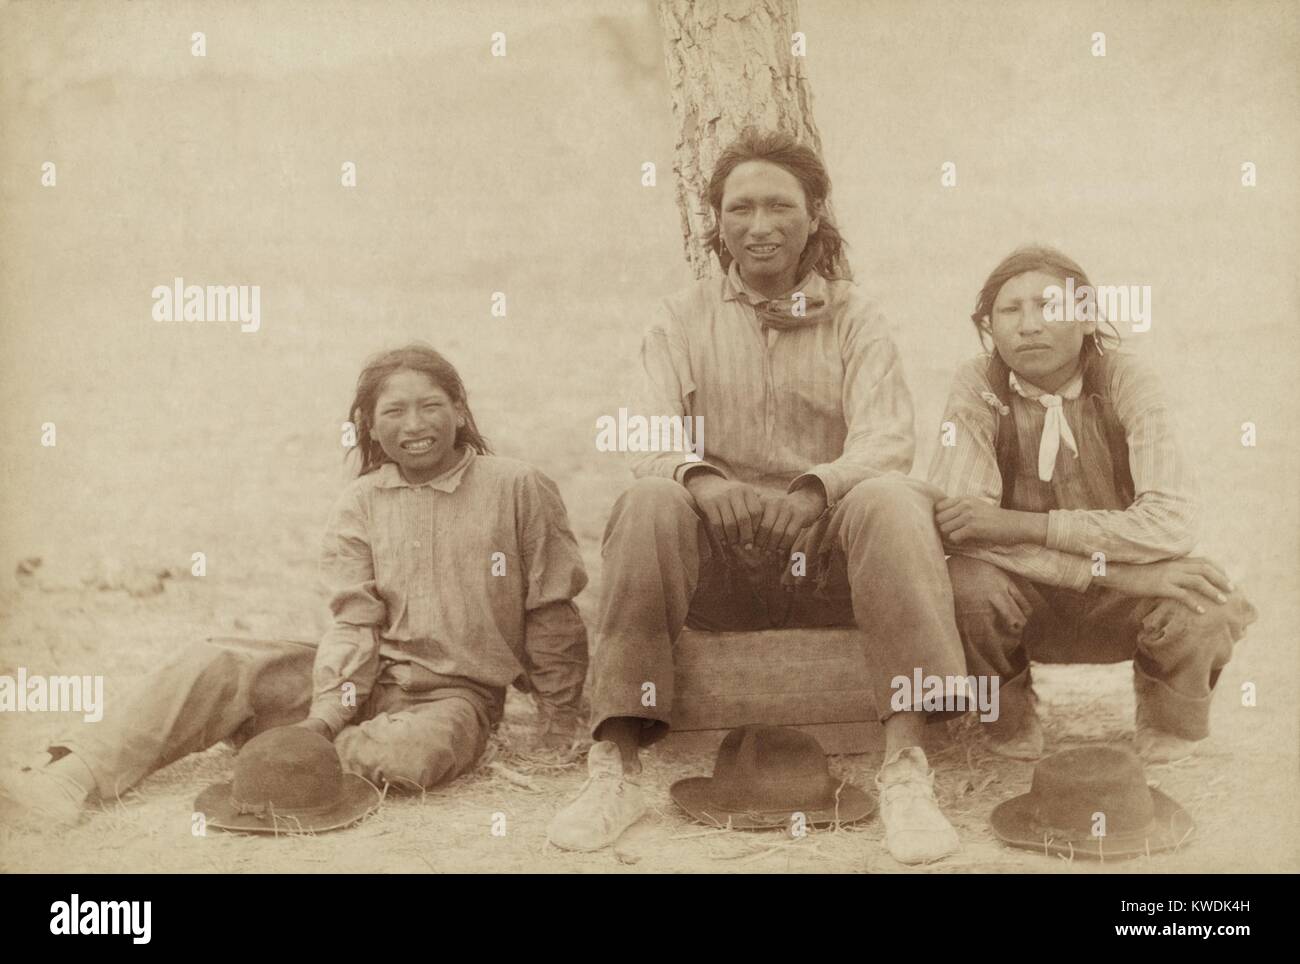 Drei Lakota Jungen im Teenageralter in westlicher Kleidung, nach dem Wounded Knee Massacre fotografiert. Die abfällige caption bezeichnet sie als Drei von Uncle Sams Haustiere, die Rationen alle 29 Tage erhalten. Foto von John C.H.Grabill, vermutlich auf dem Pine Ridge Reservat. Foto von John Grabill, Jan. 1891 (BSLOC 2017 18 42) Stockfoto